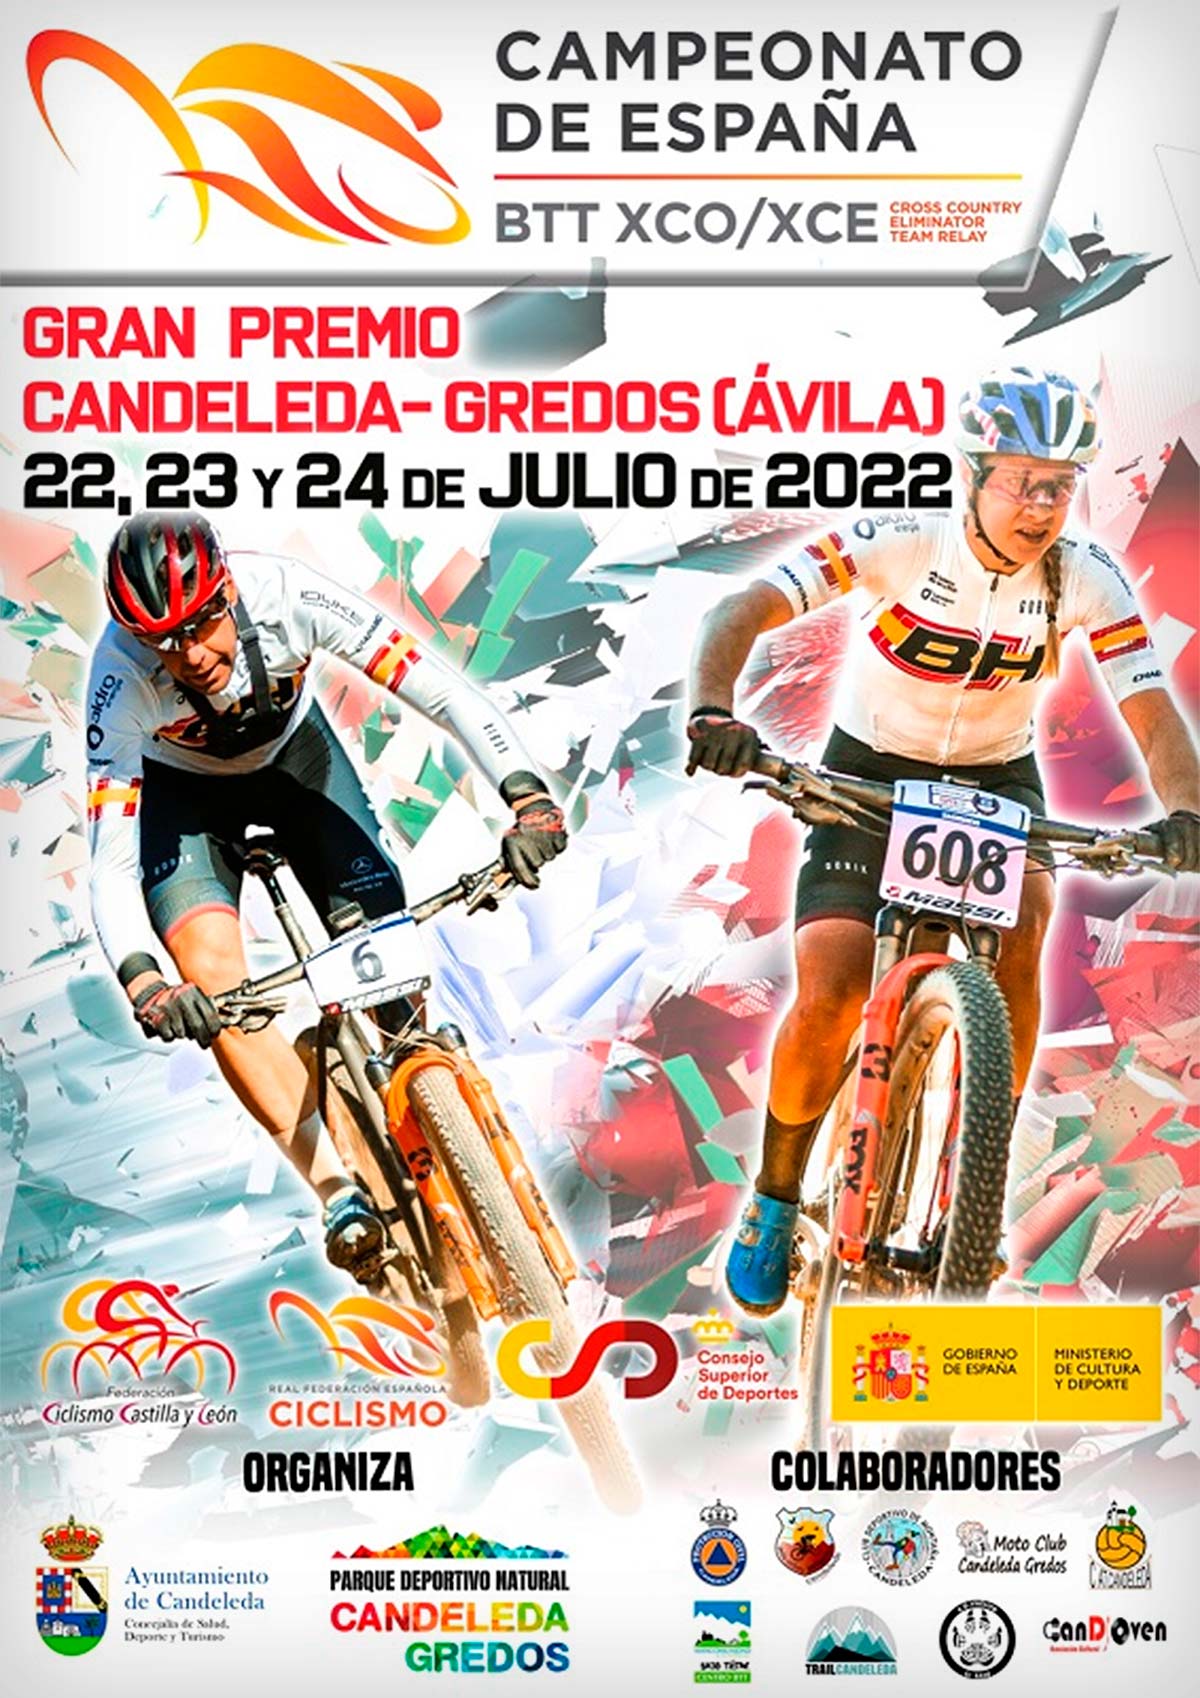 Todo a punto para el Campeonato de España de XCO-XCE 2022 en Candeleda